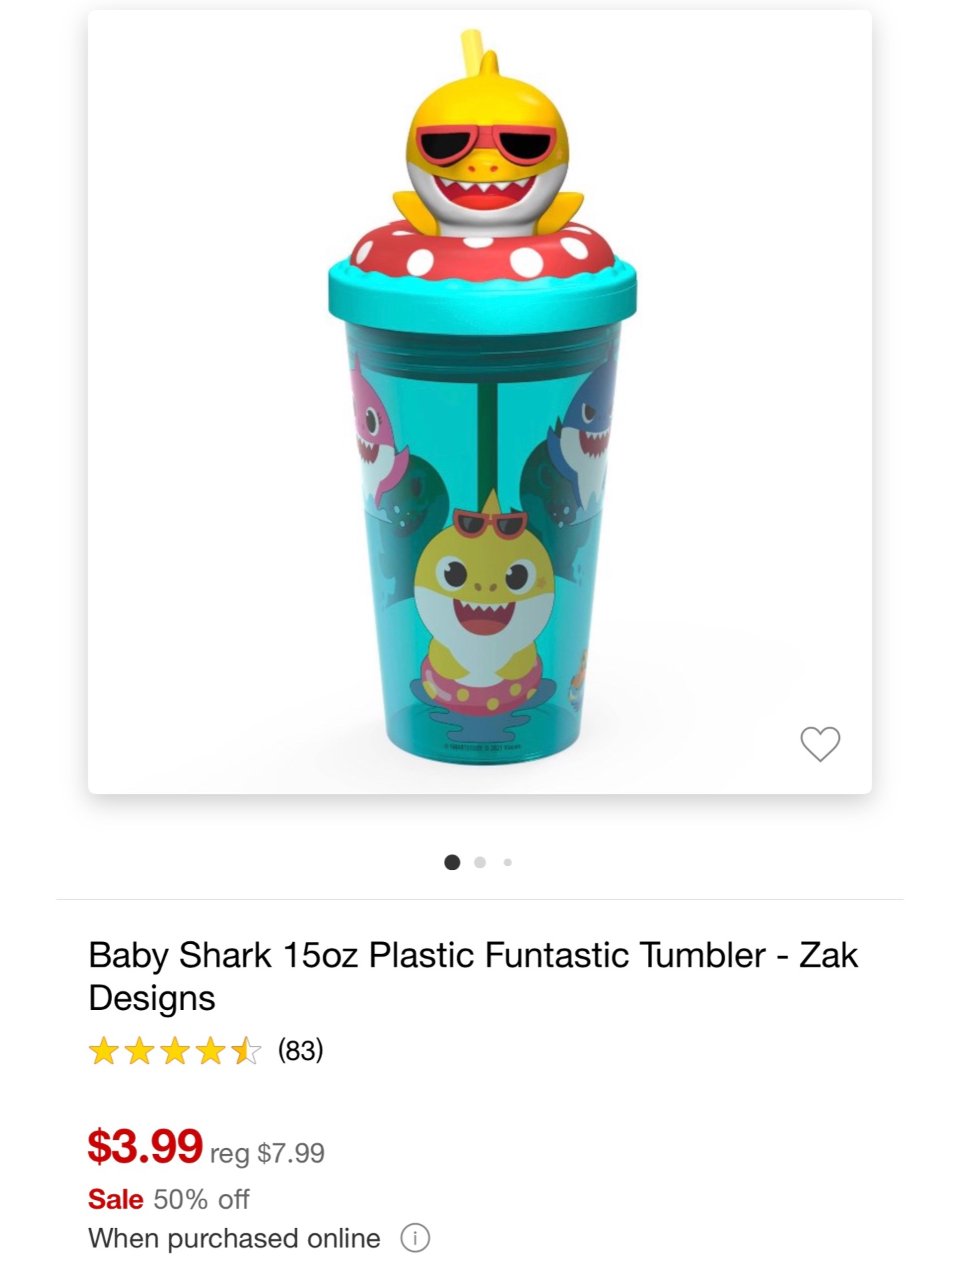 Baby Shark 杯子😍...